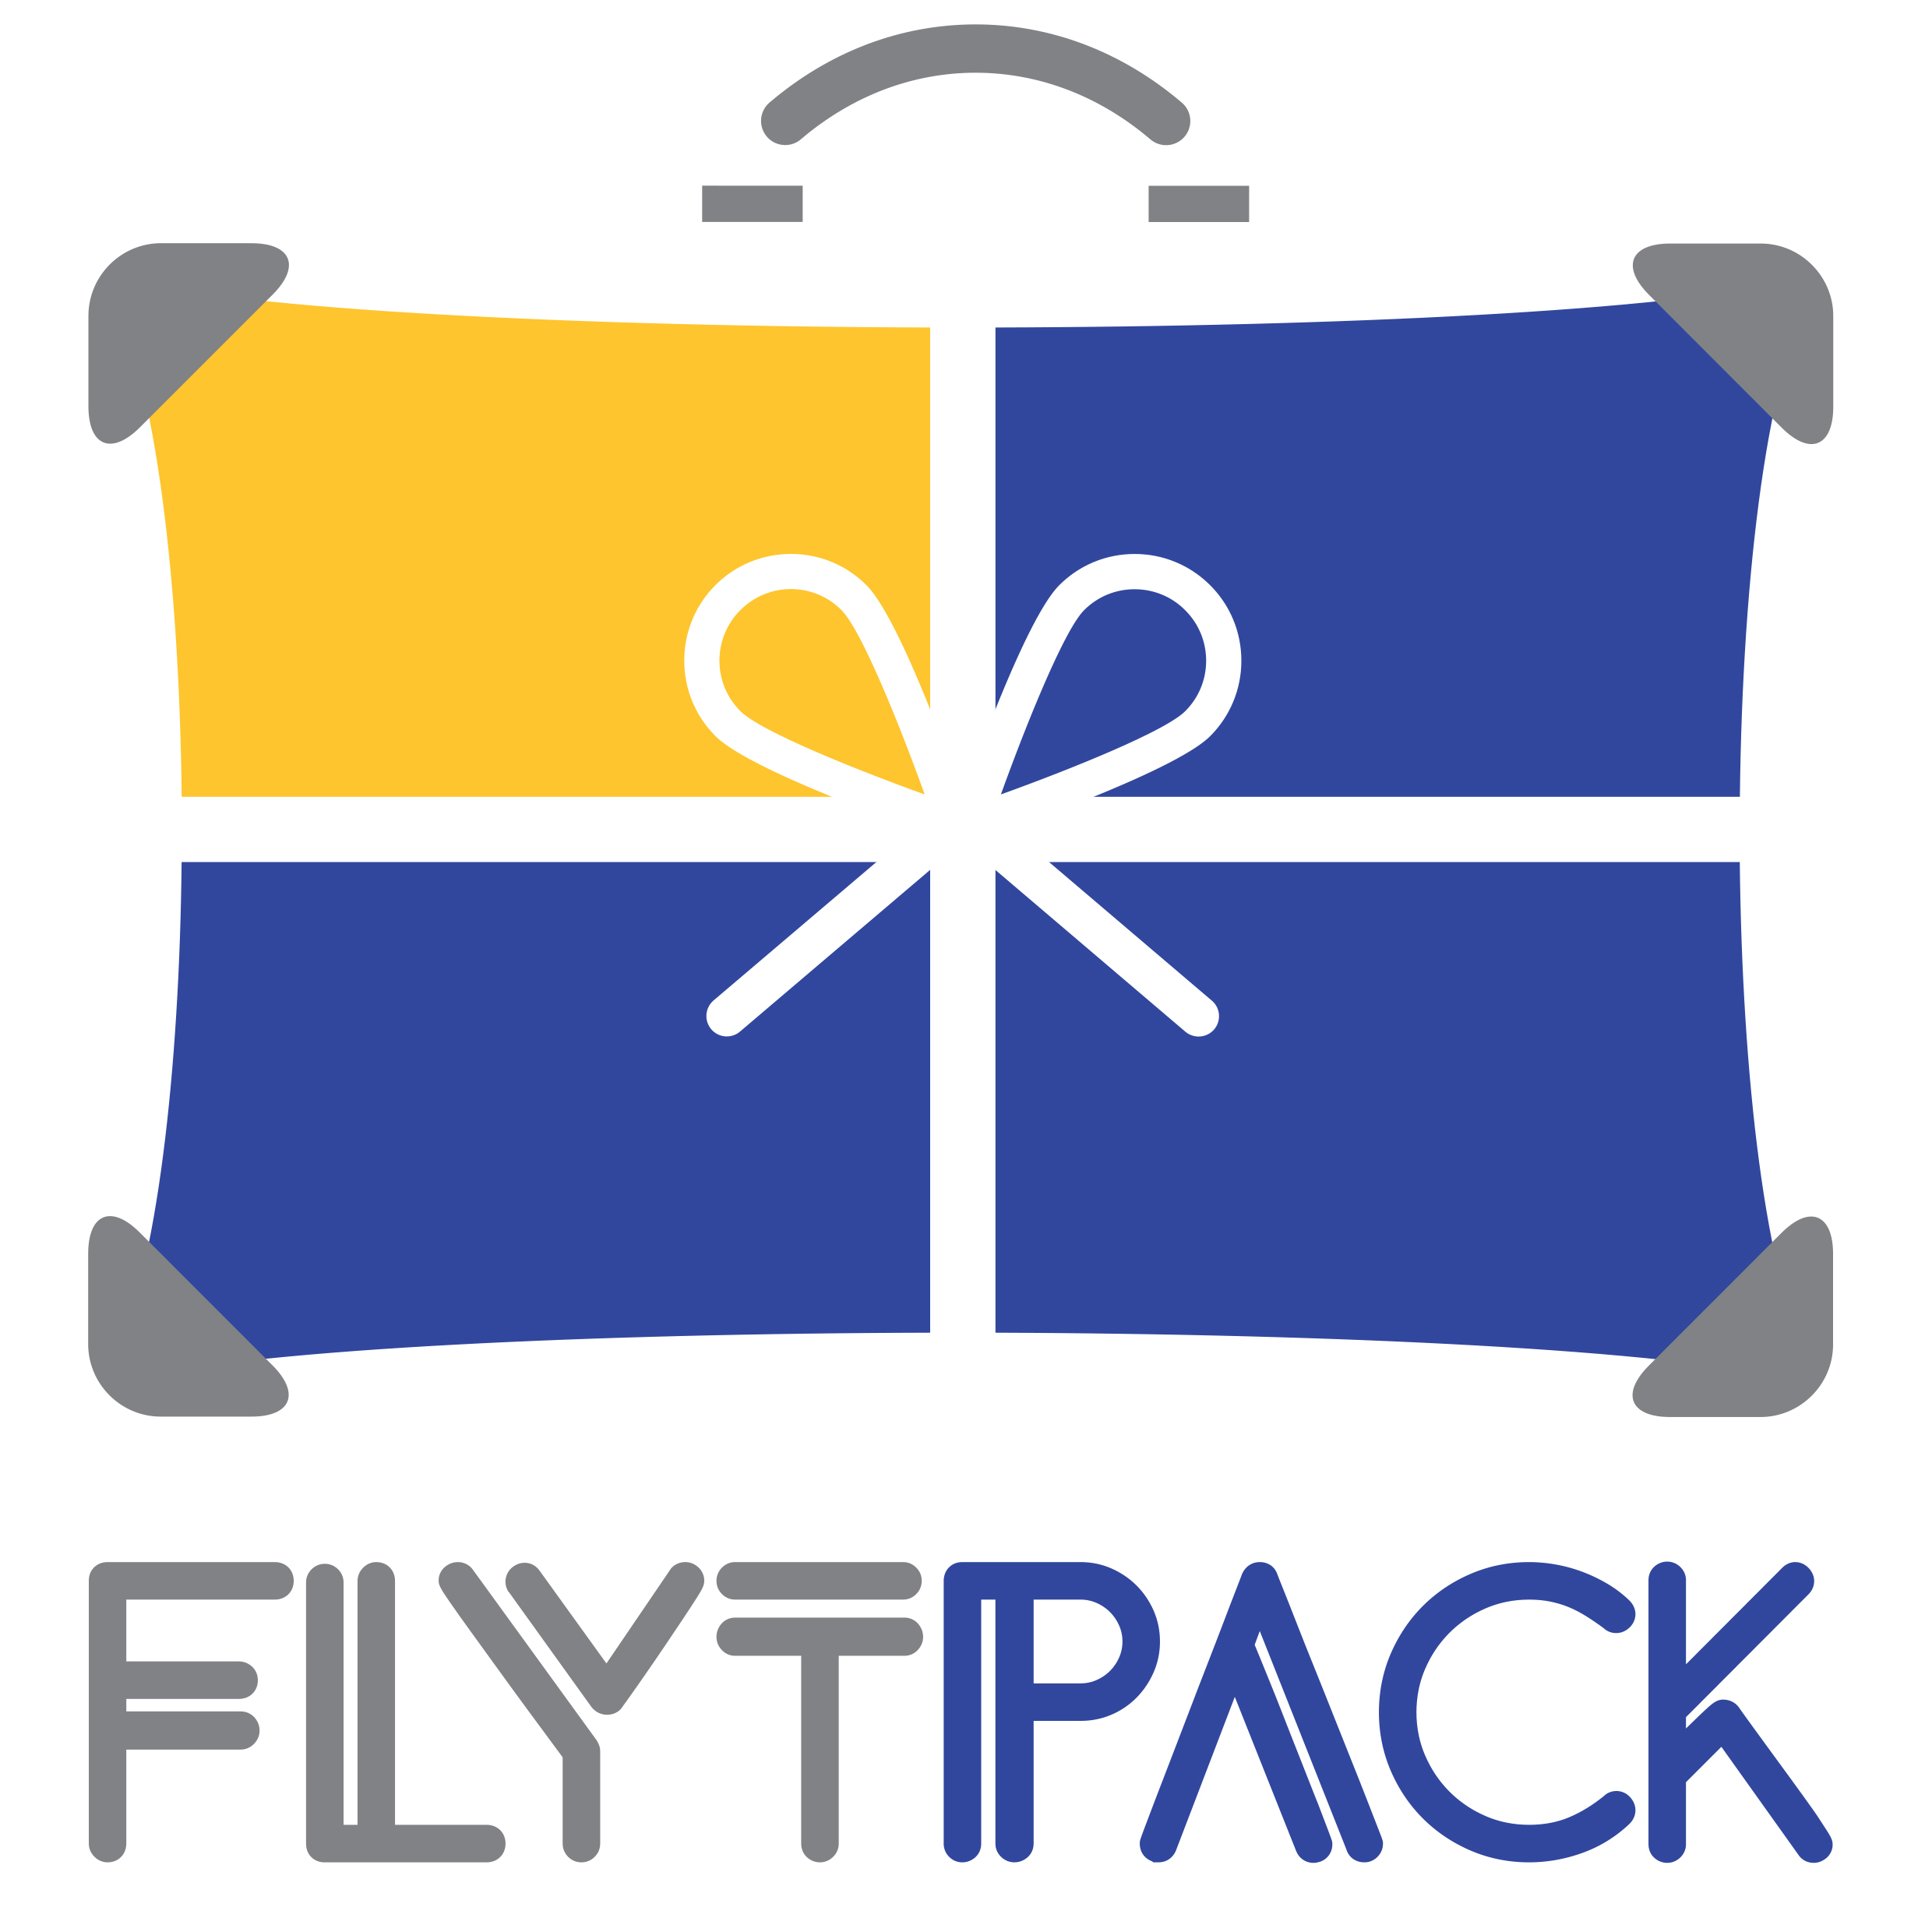 Flytpack